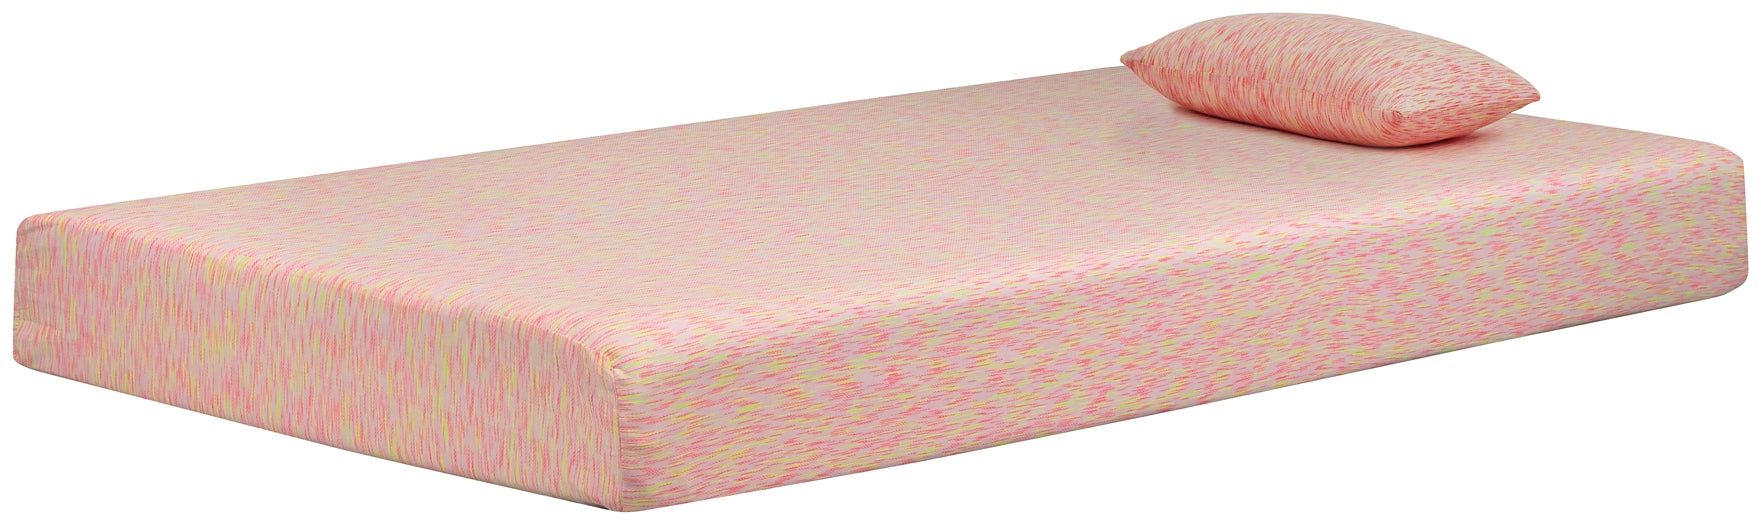 iKidz Pink Sierra Sleep by Ashley Mattress